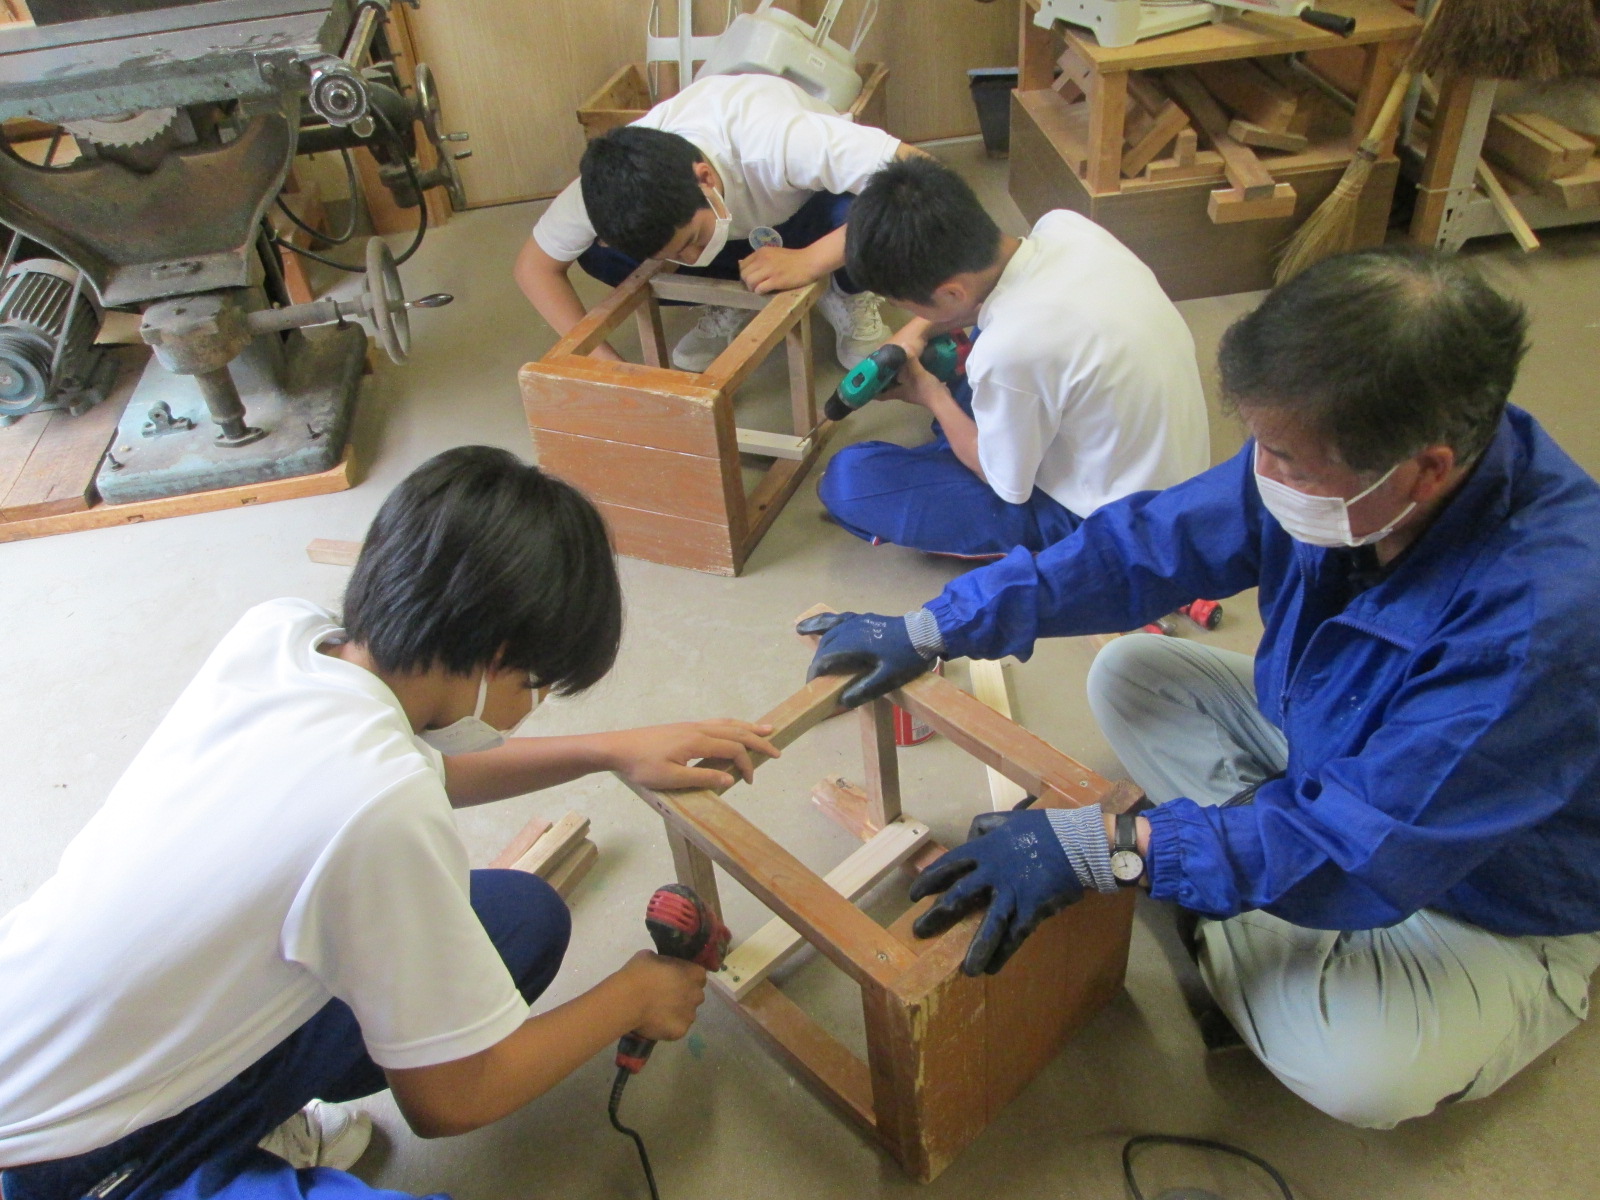 指導員の指示を聞きながら木製の椅子を修理する中学生たちの写真